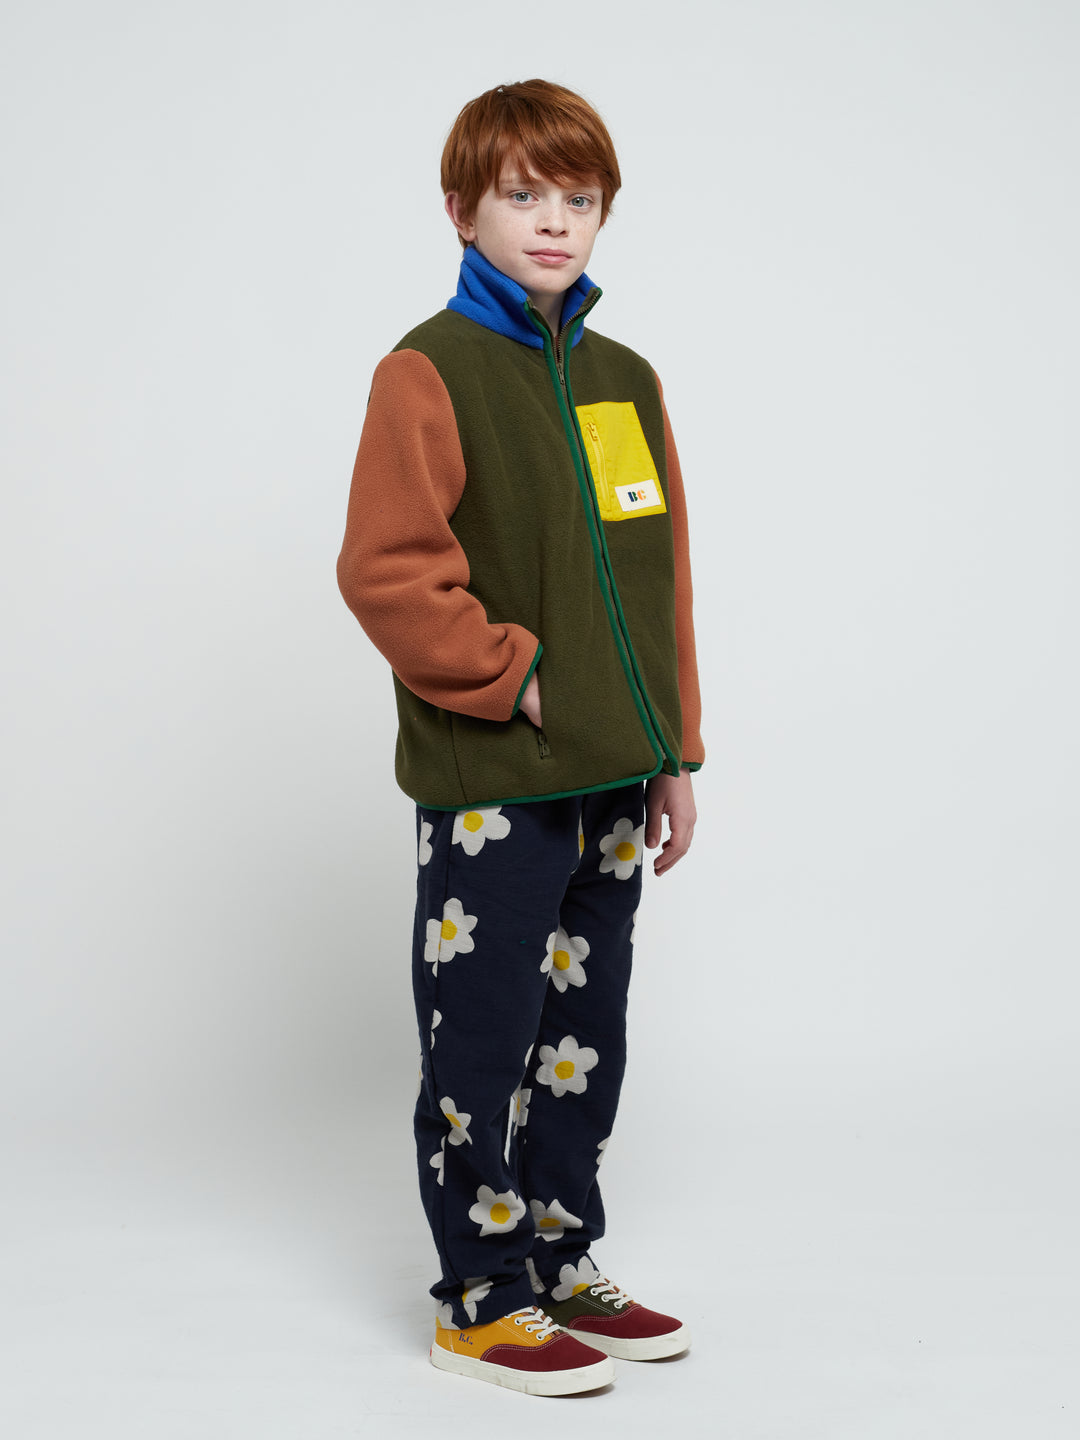 Enfant qui porte un Veste en polaire kaki, brun, bleu, vert et jaune 